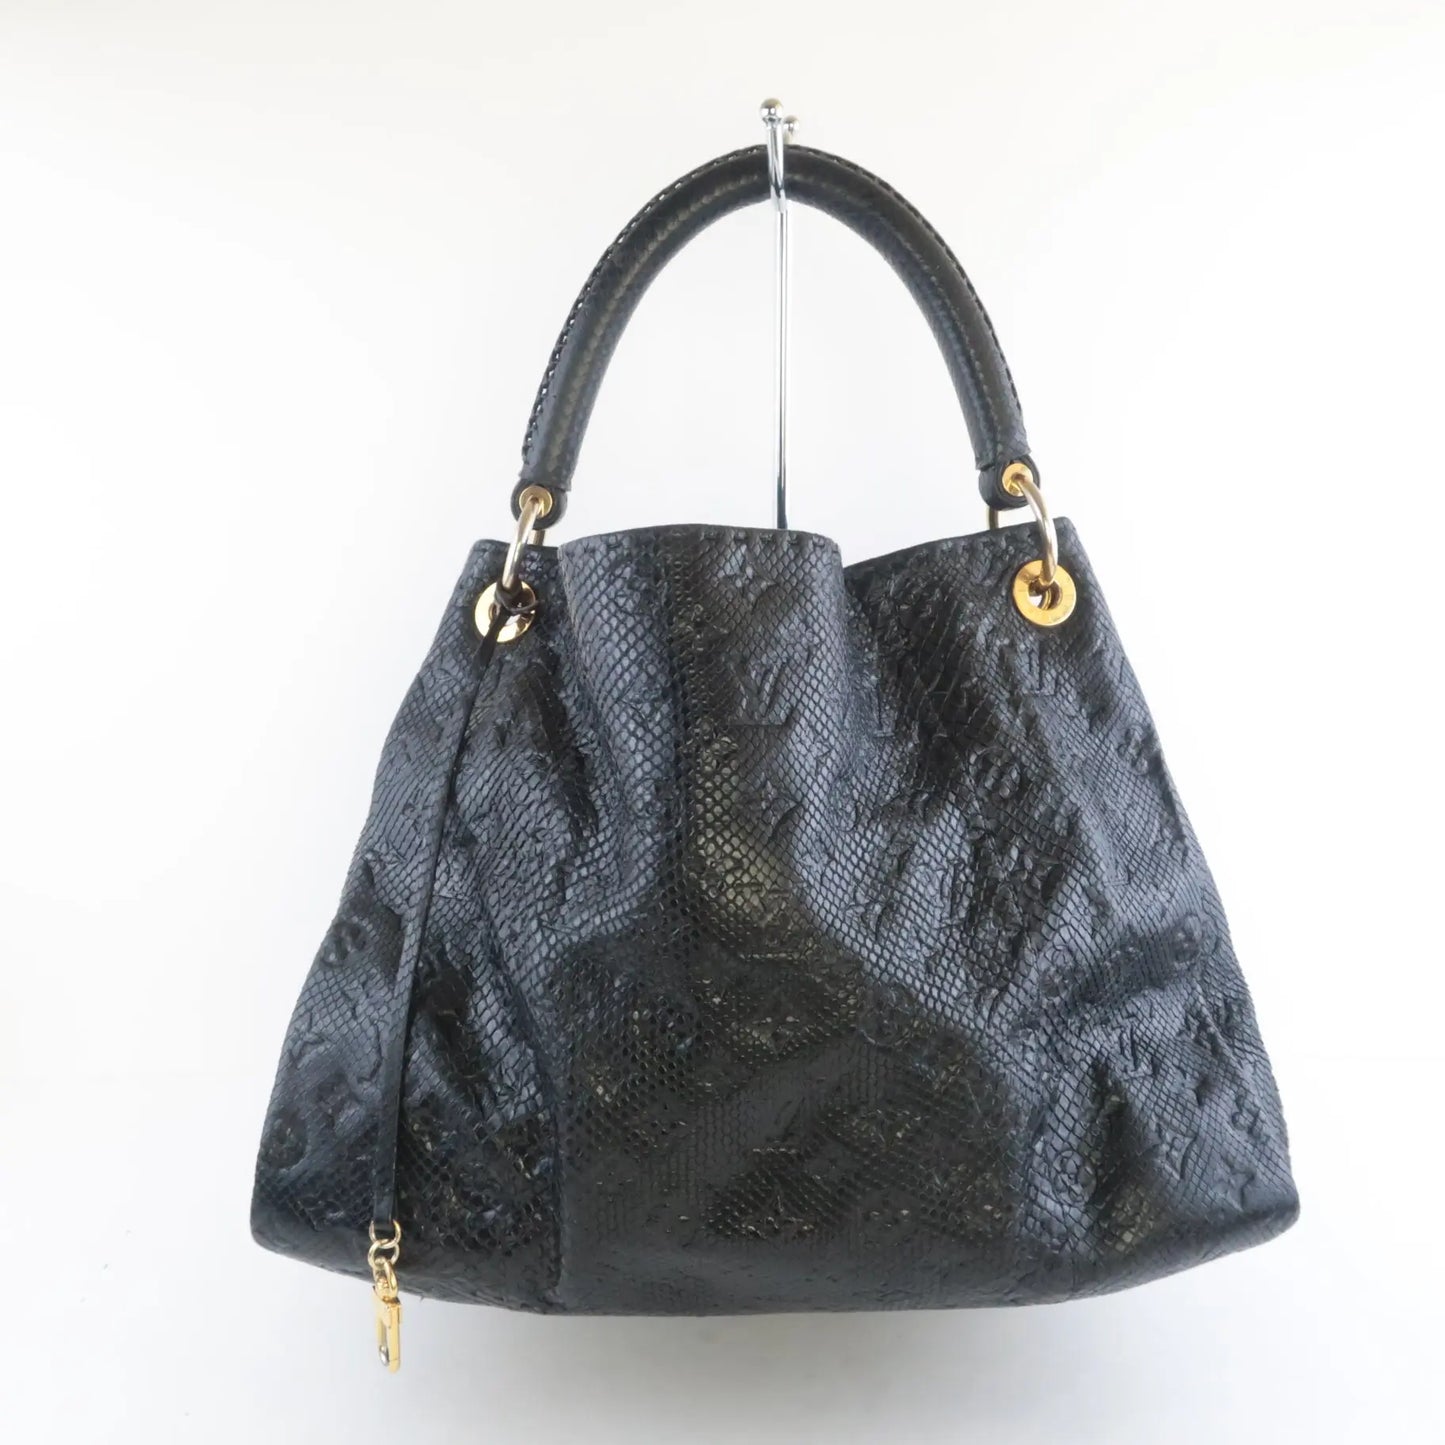 Louis Vuitton Noir Python Limited Edition Artsy MM Bag Louis Vuitton